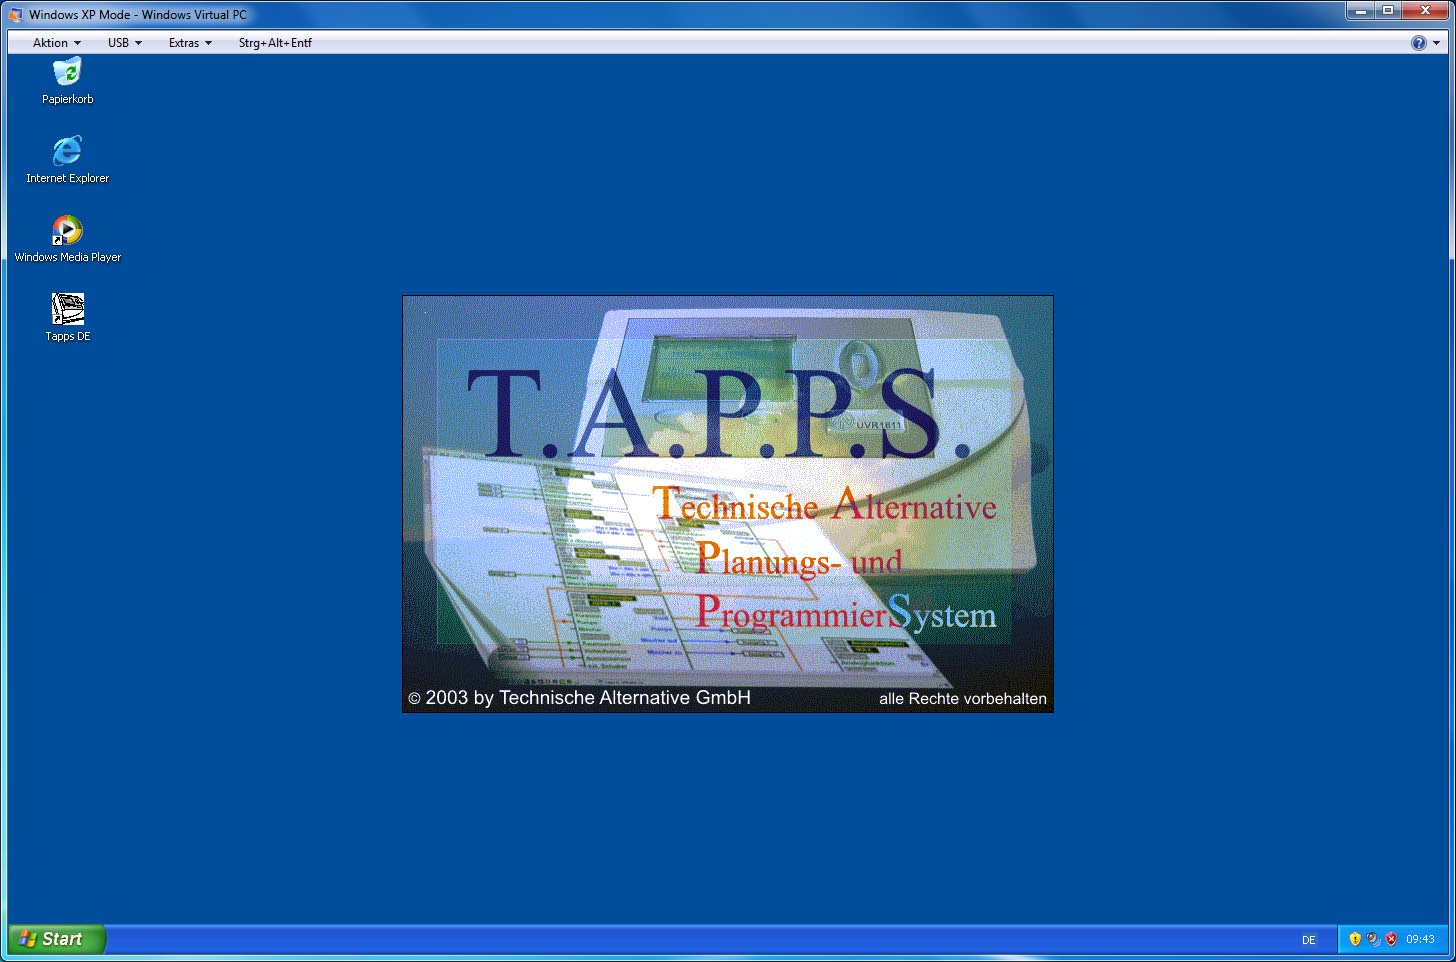 Auf diese Weise kann die TAPPS-Installationsdatei von Windows 7 auf das virtuelle Windows XP